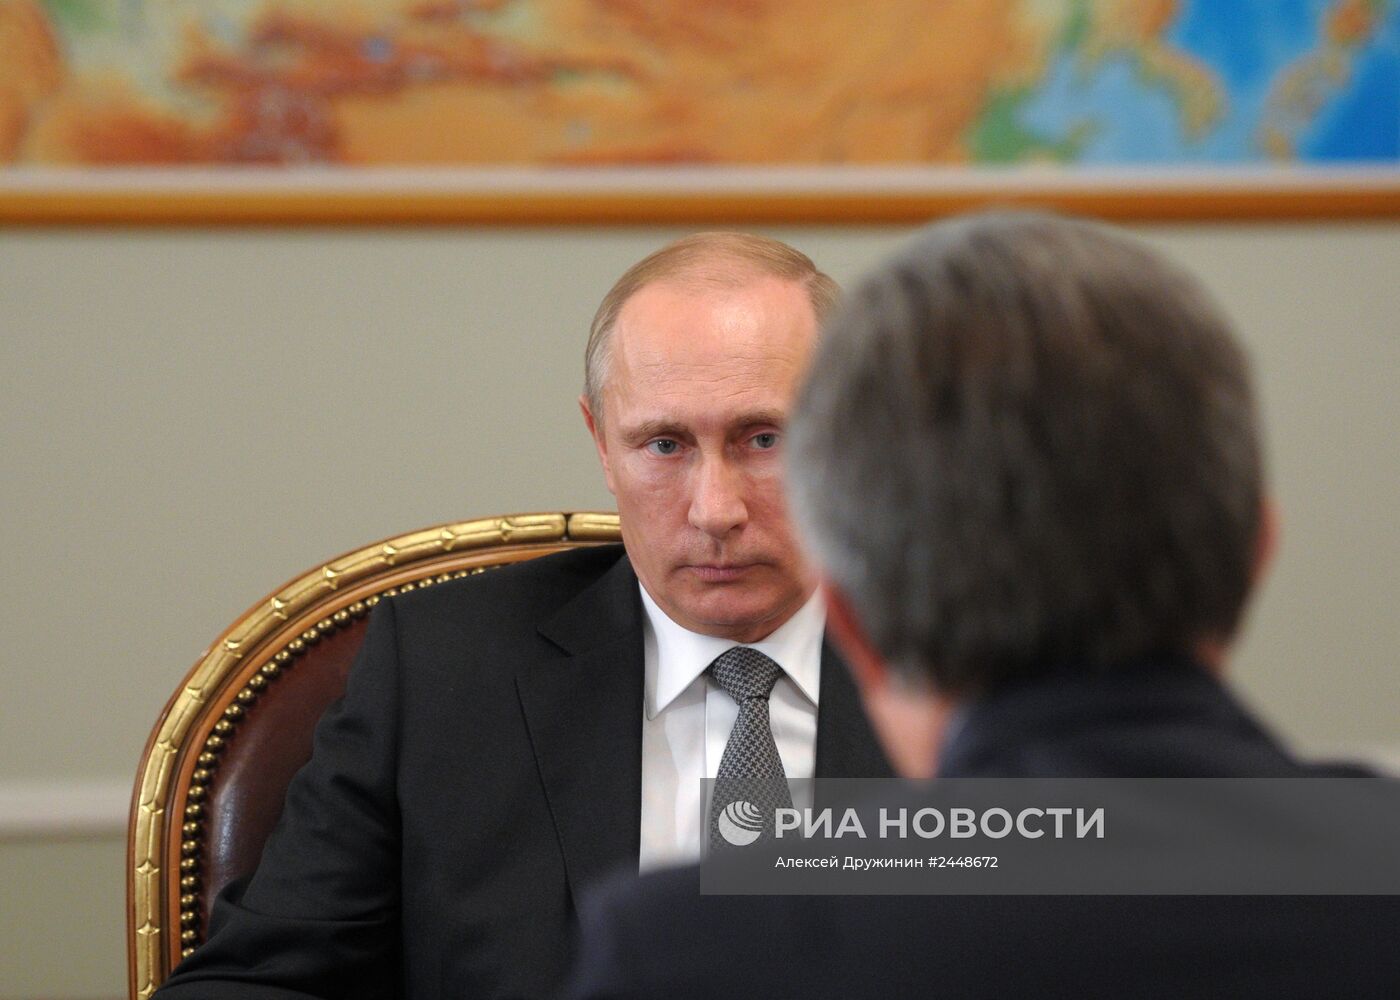 В.Путин встретился с В.Мутко